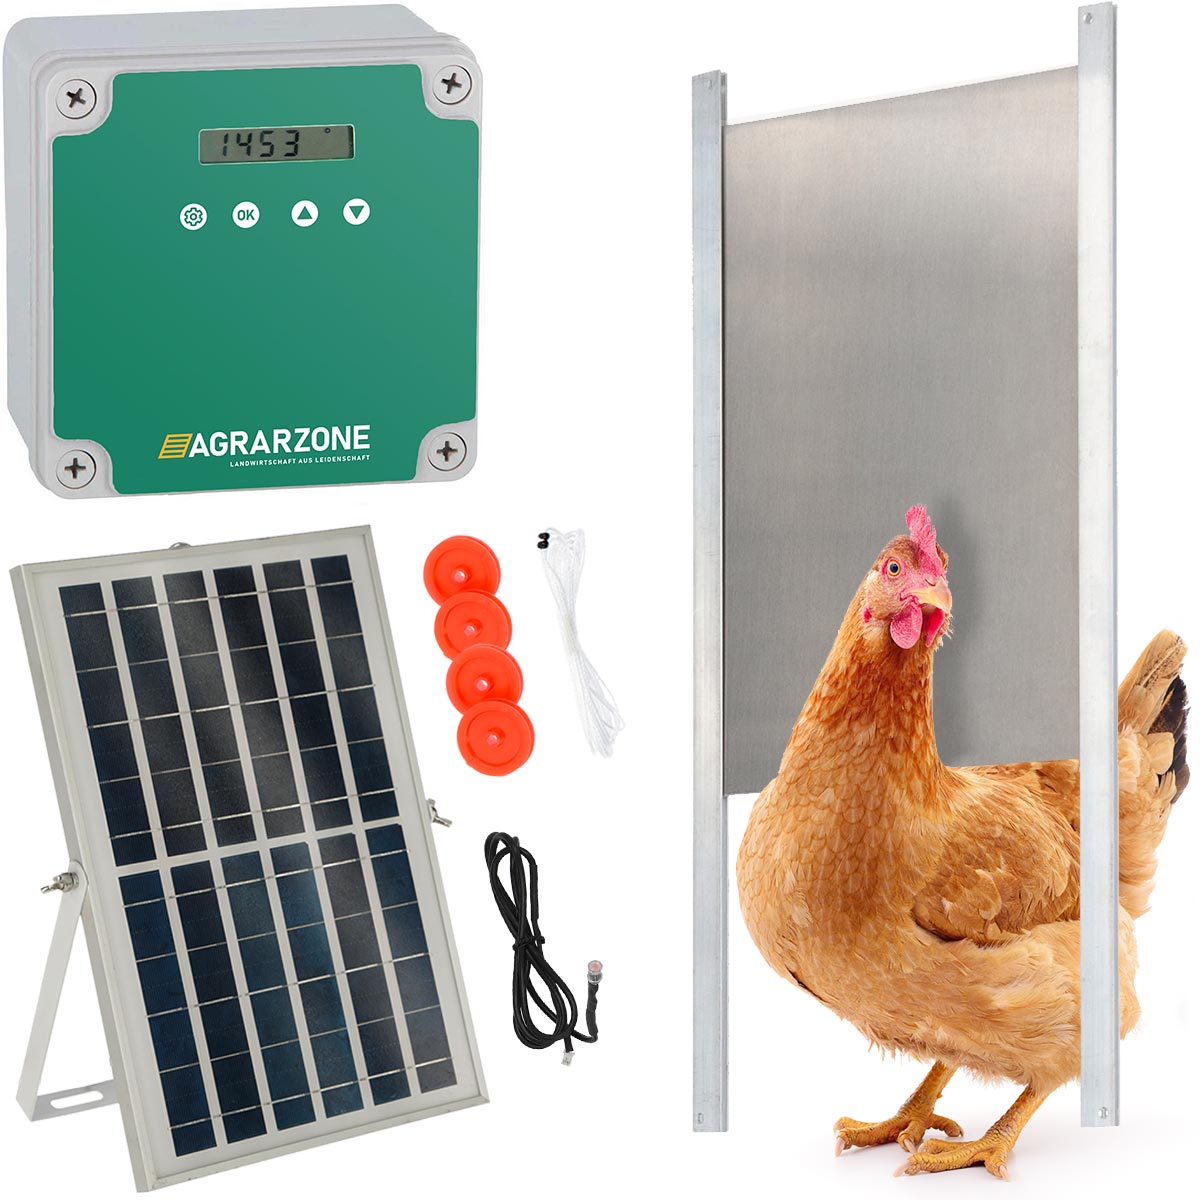 Agrarzone ușă automată pentru coteț cu energie solară